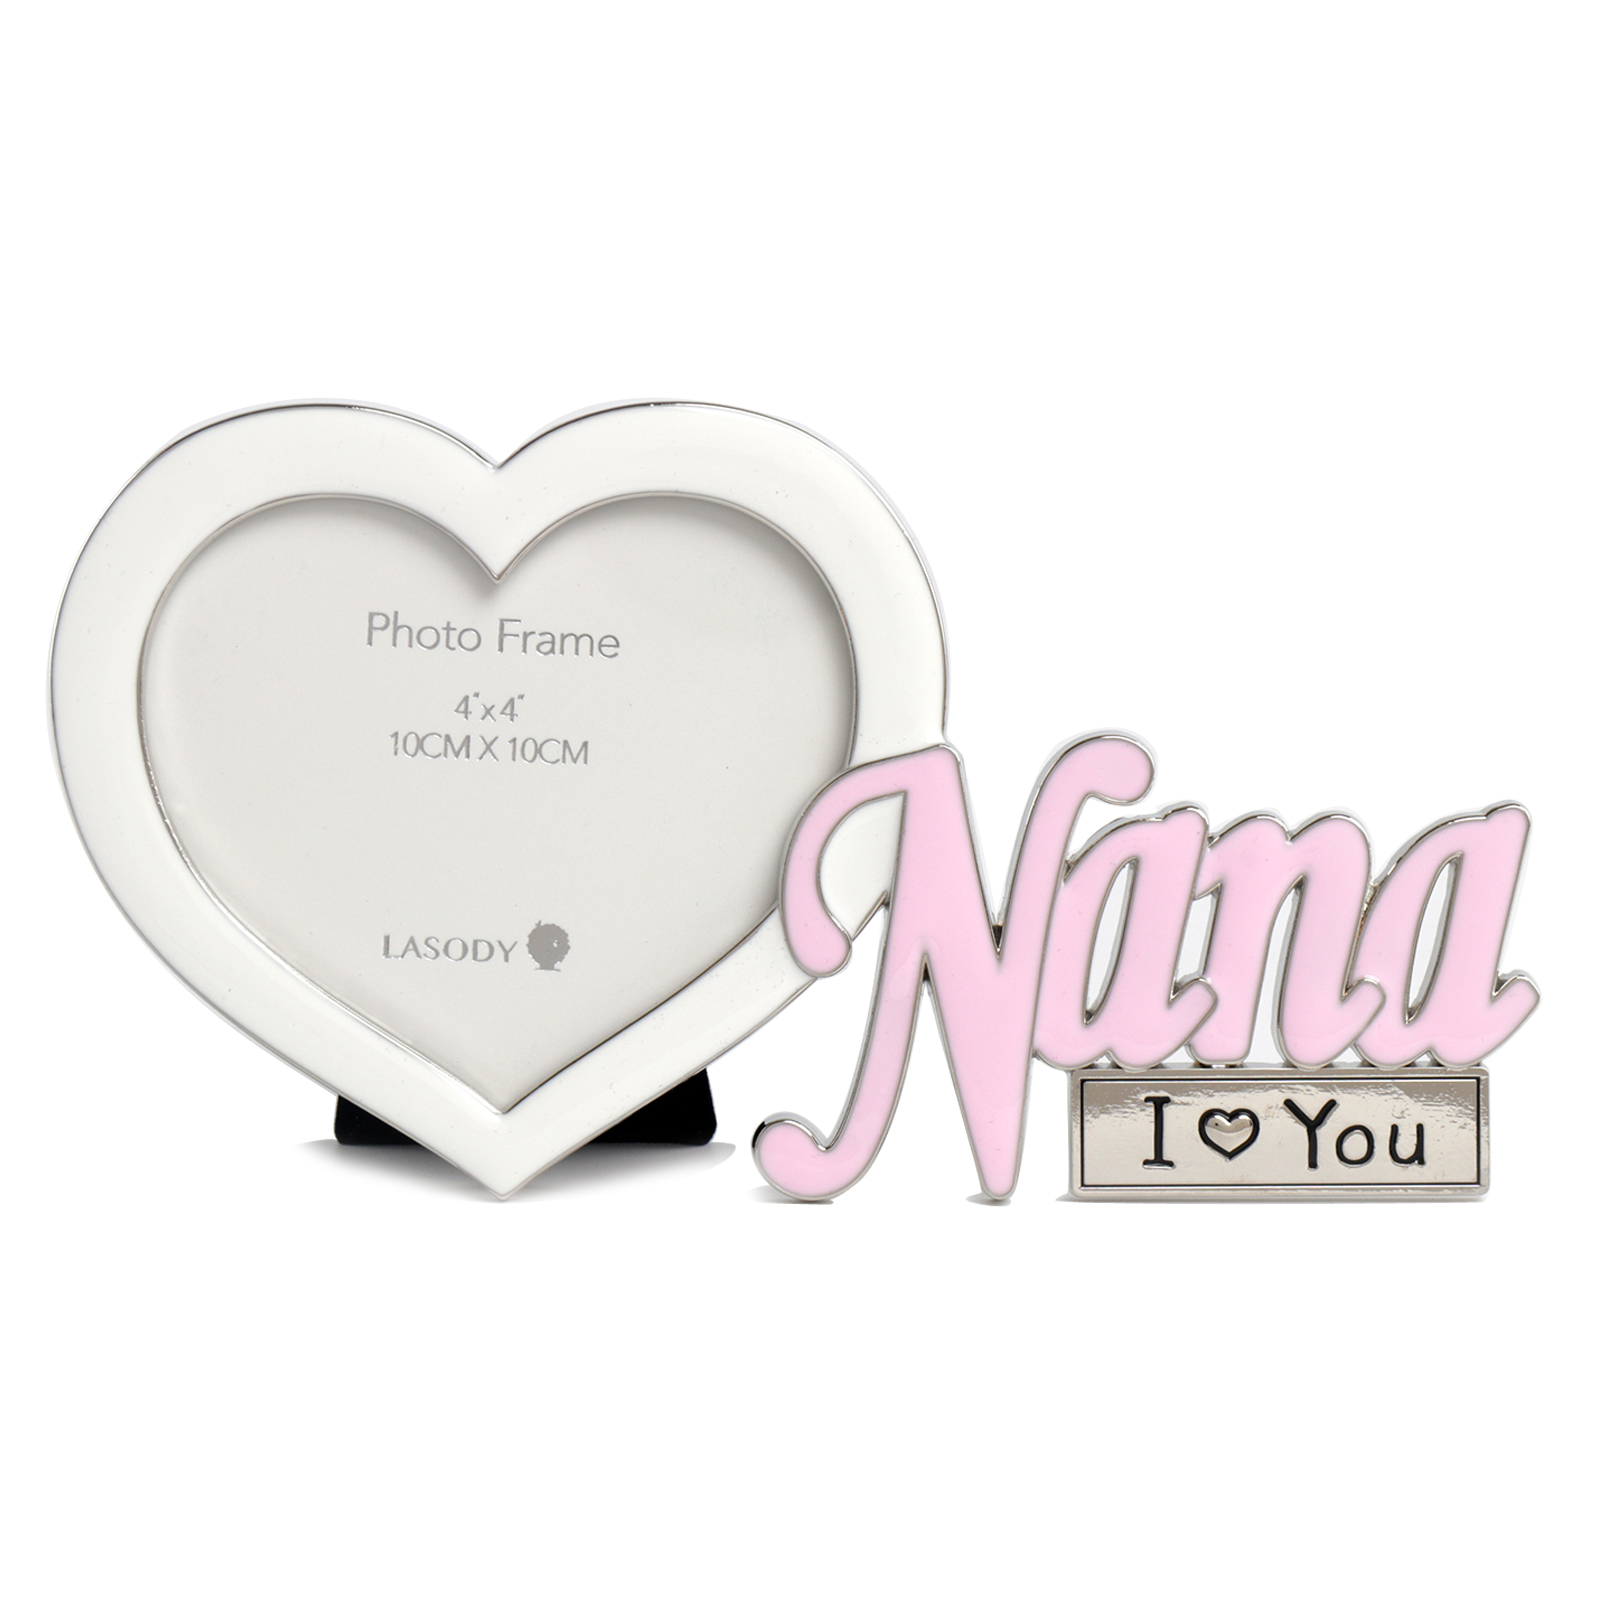 I LOVE YOU Nana W/Heart shape frame